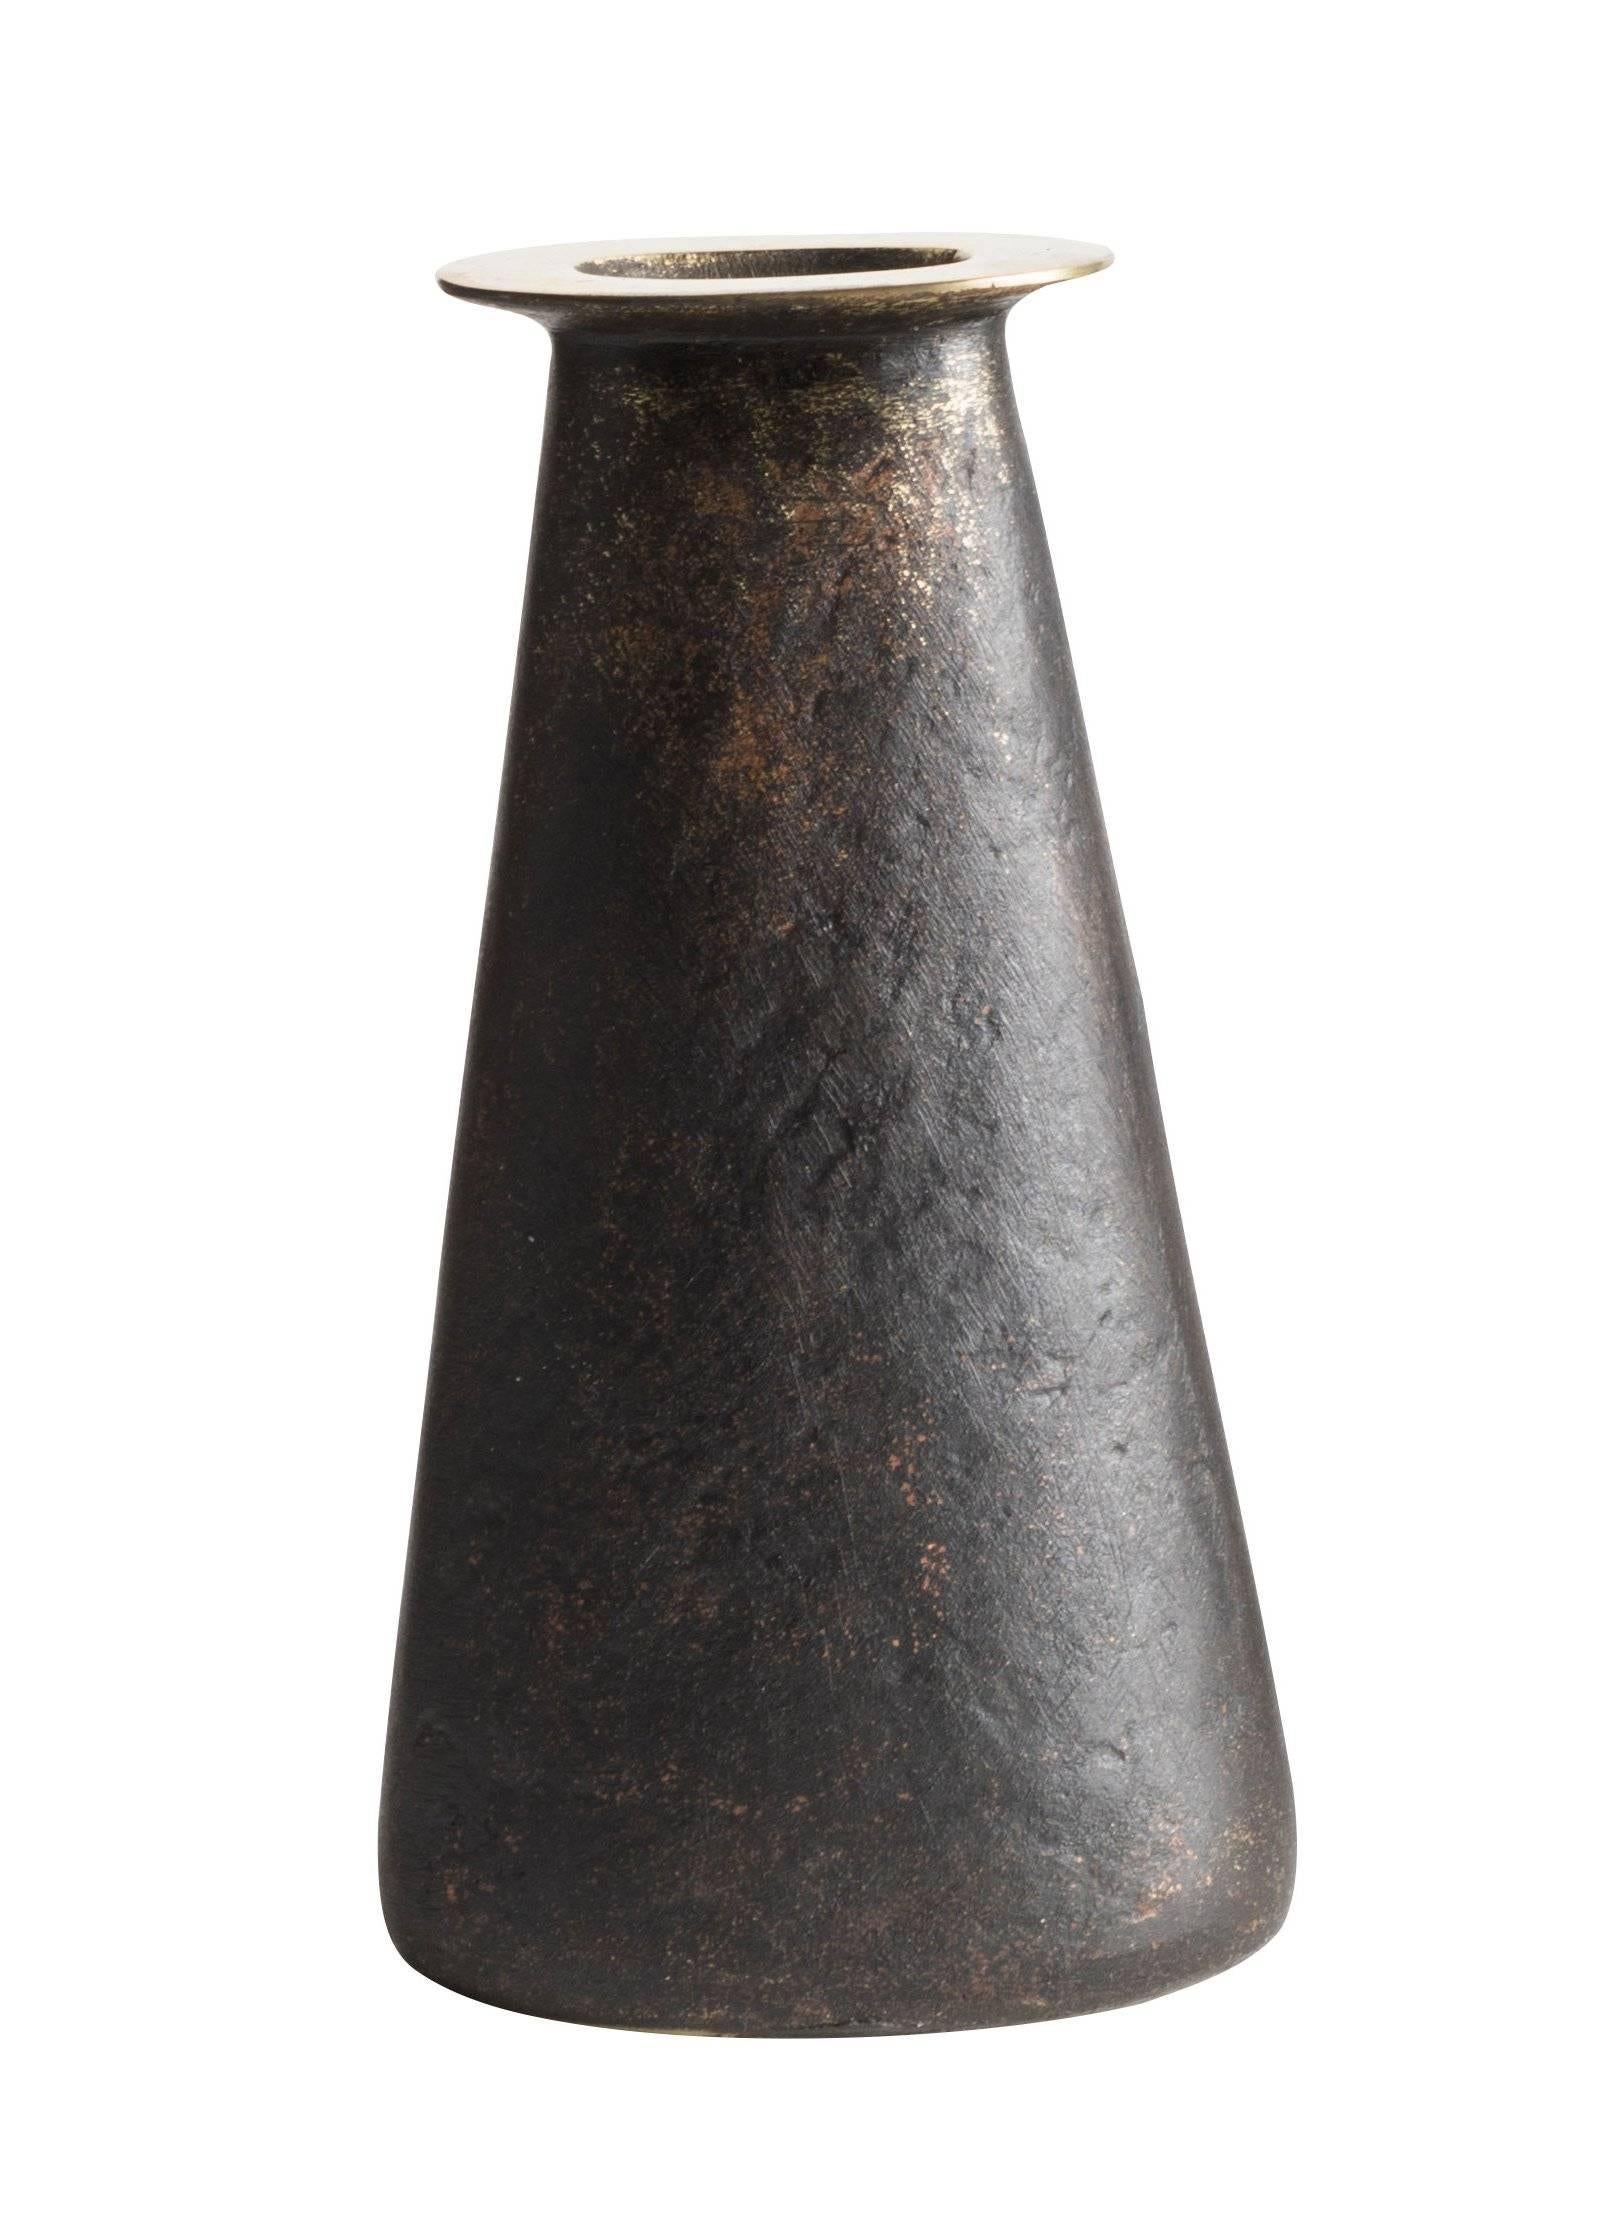 Carl Auböck Model #3794 'Aorta' Brass Vase For Sale 5